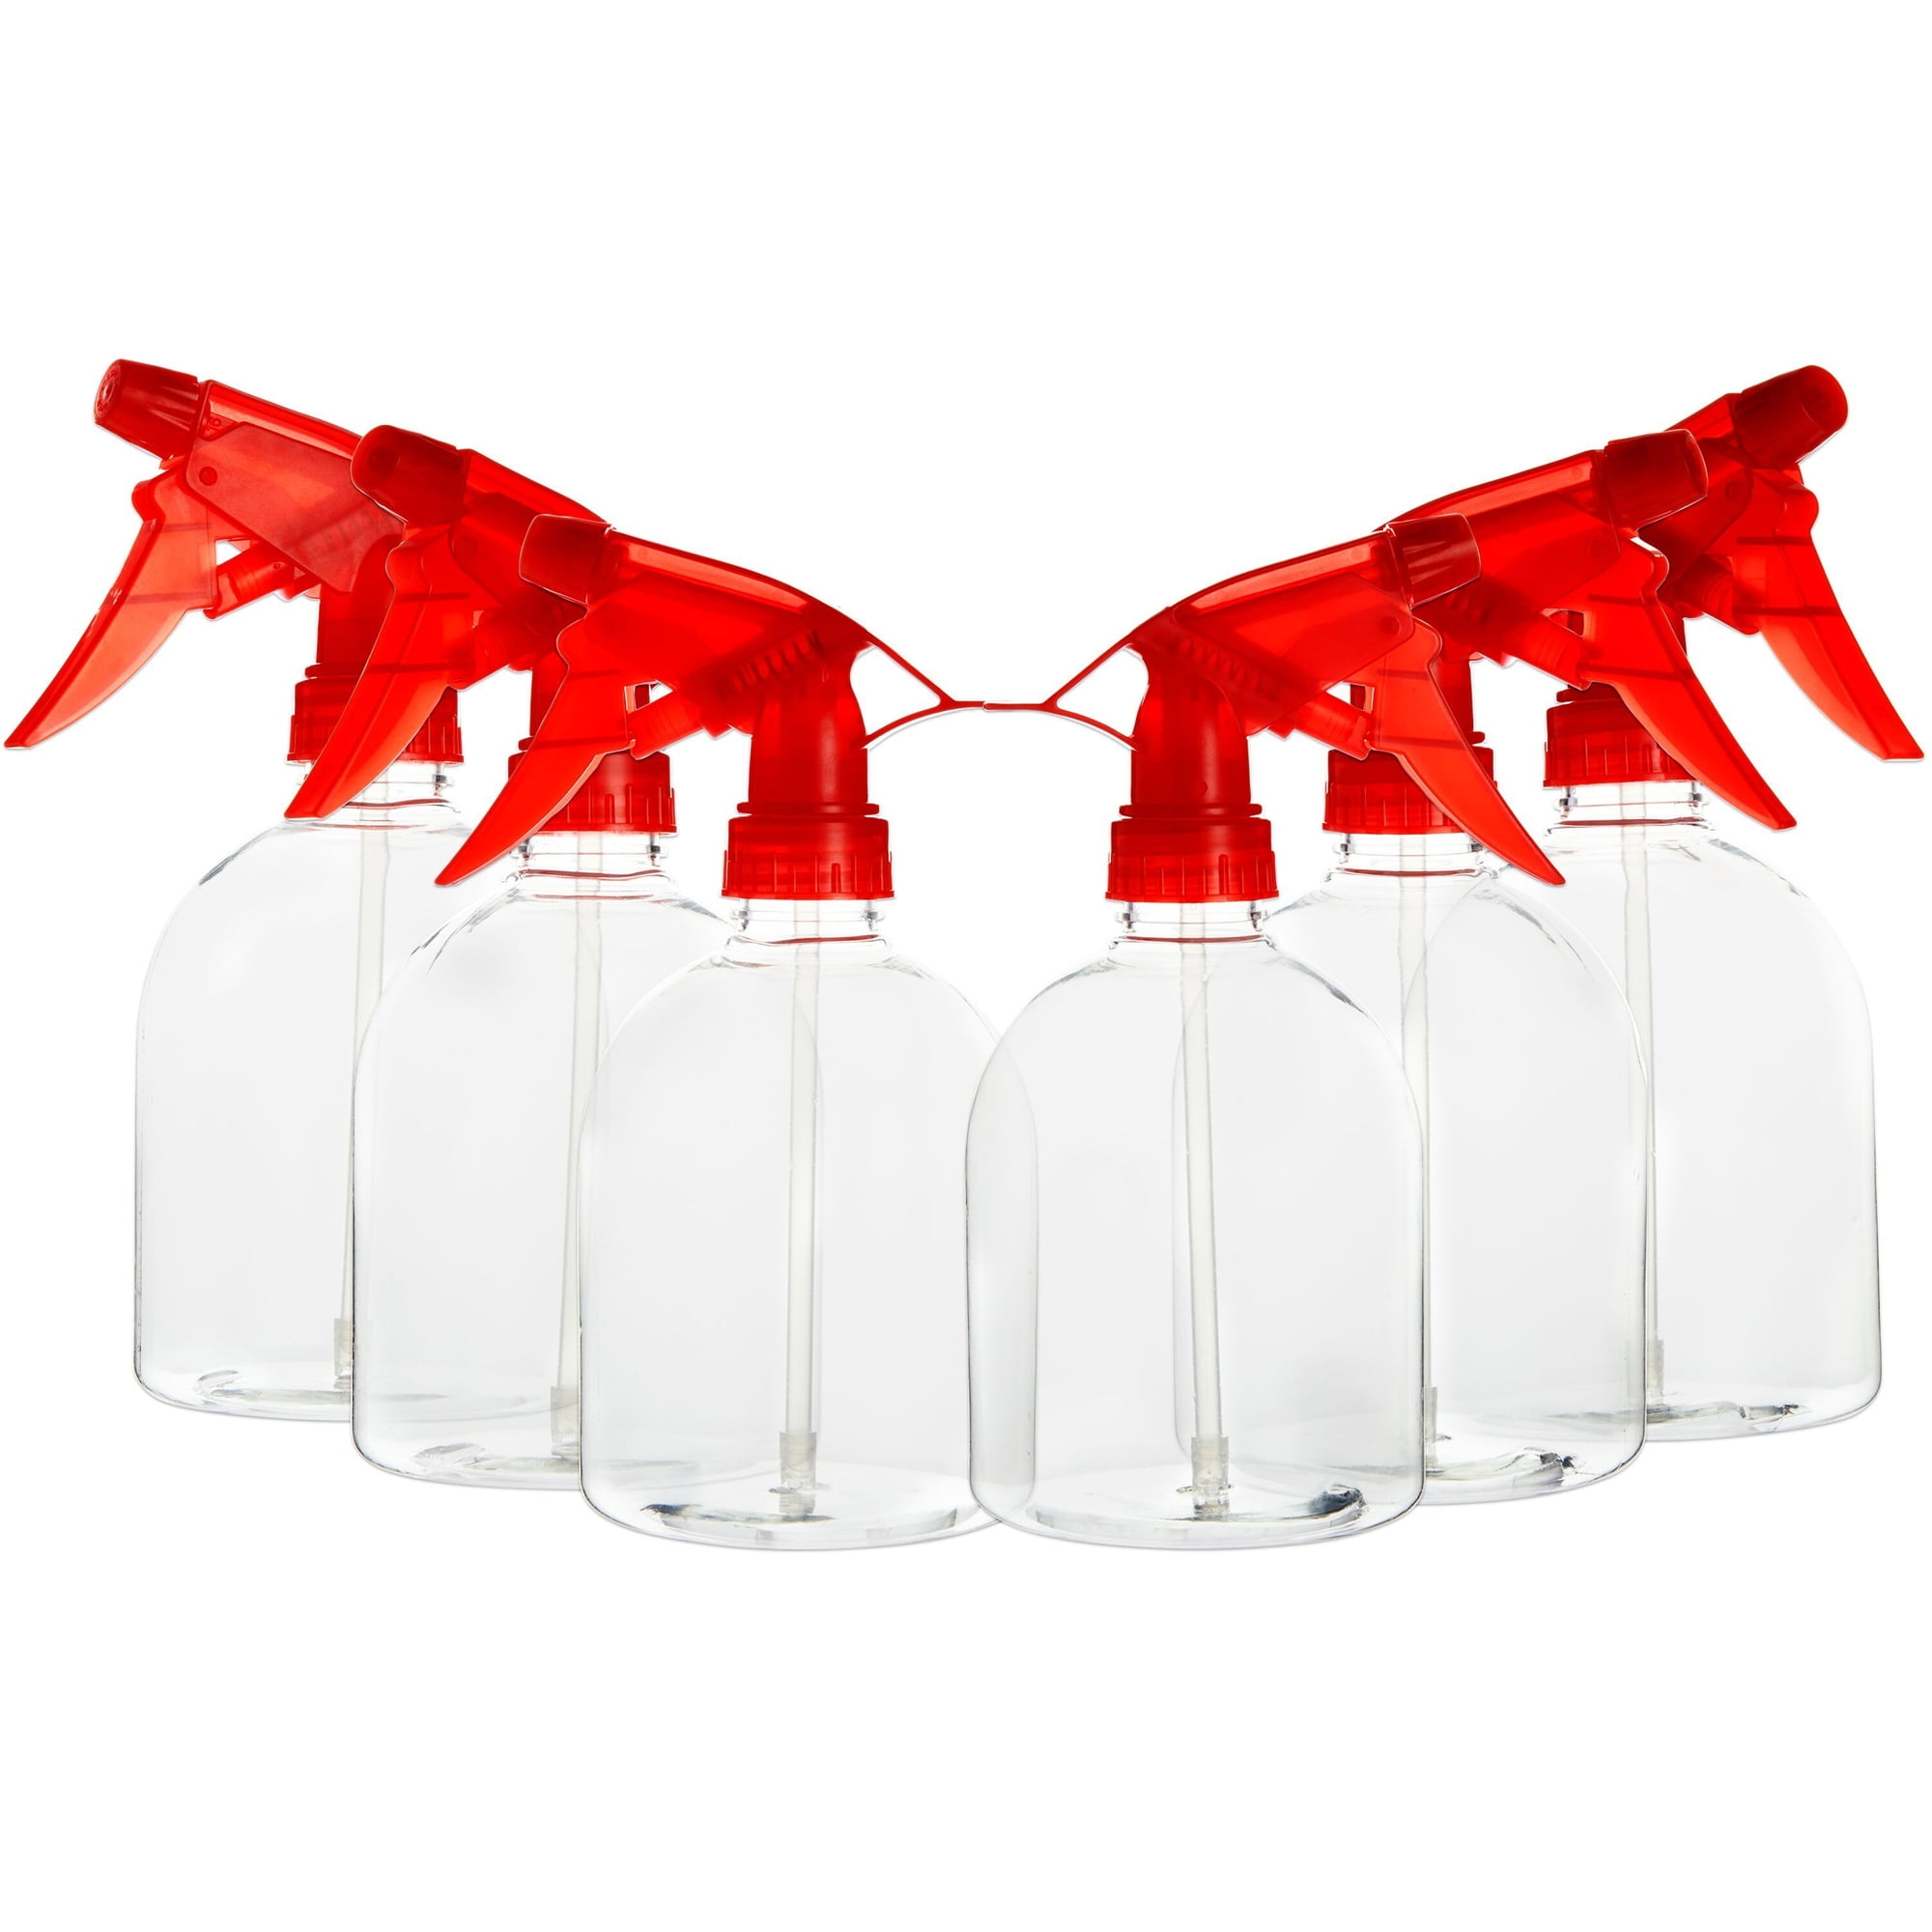 16 Oz. Plastic Shaker Bottle - ASHB02 - IdeaStage Promotional Products